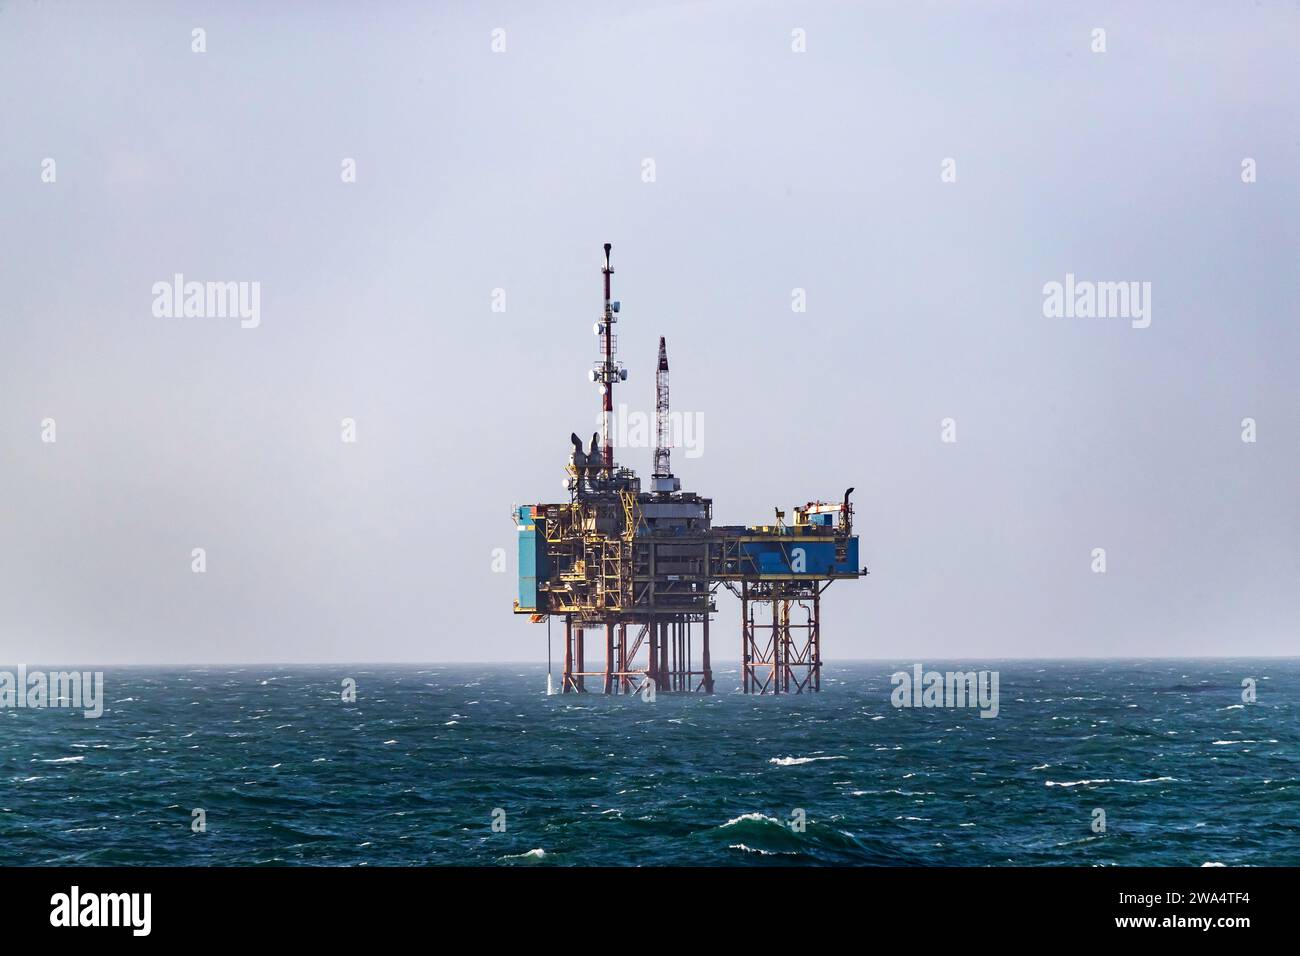 Nordsee-Ölplattform an einem carm-Tag auf See. Nordsee. Stockfoto